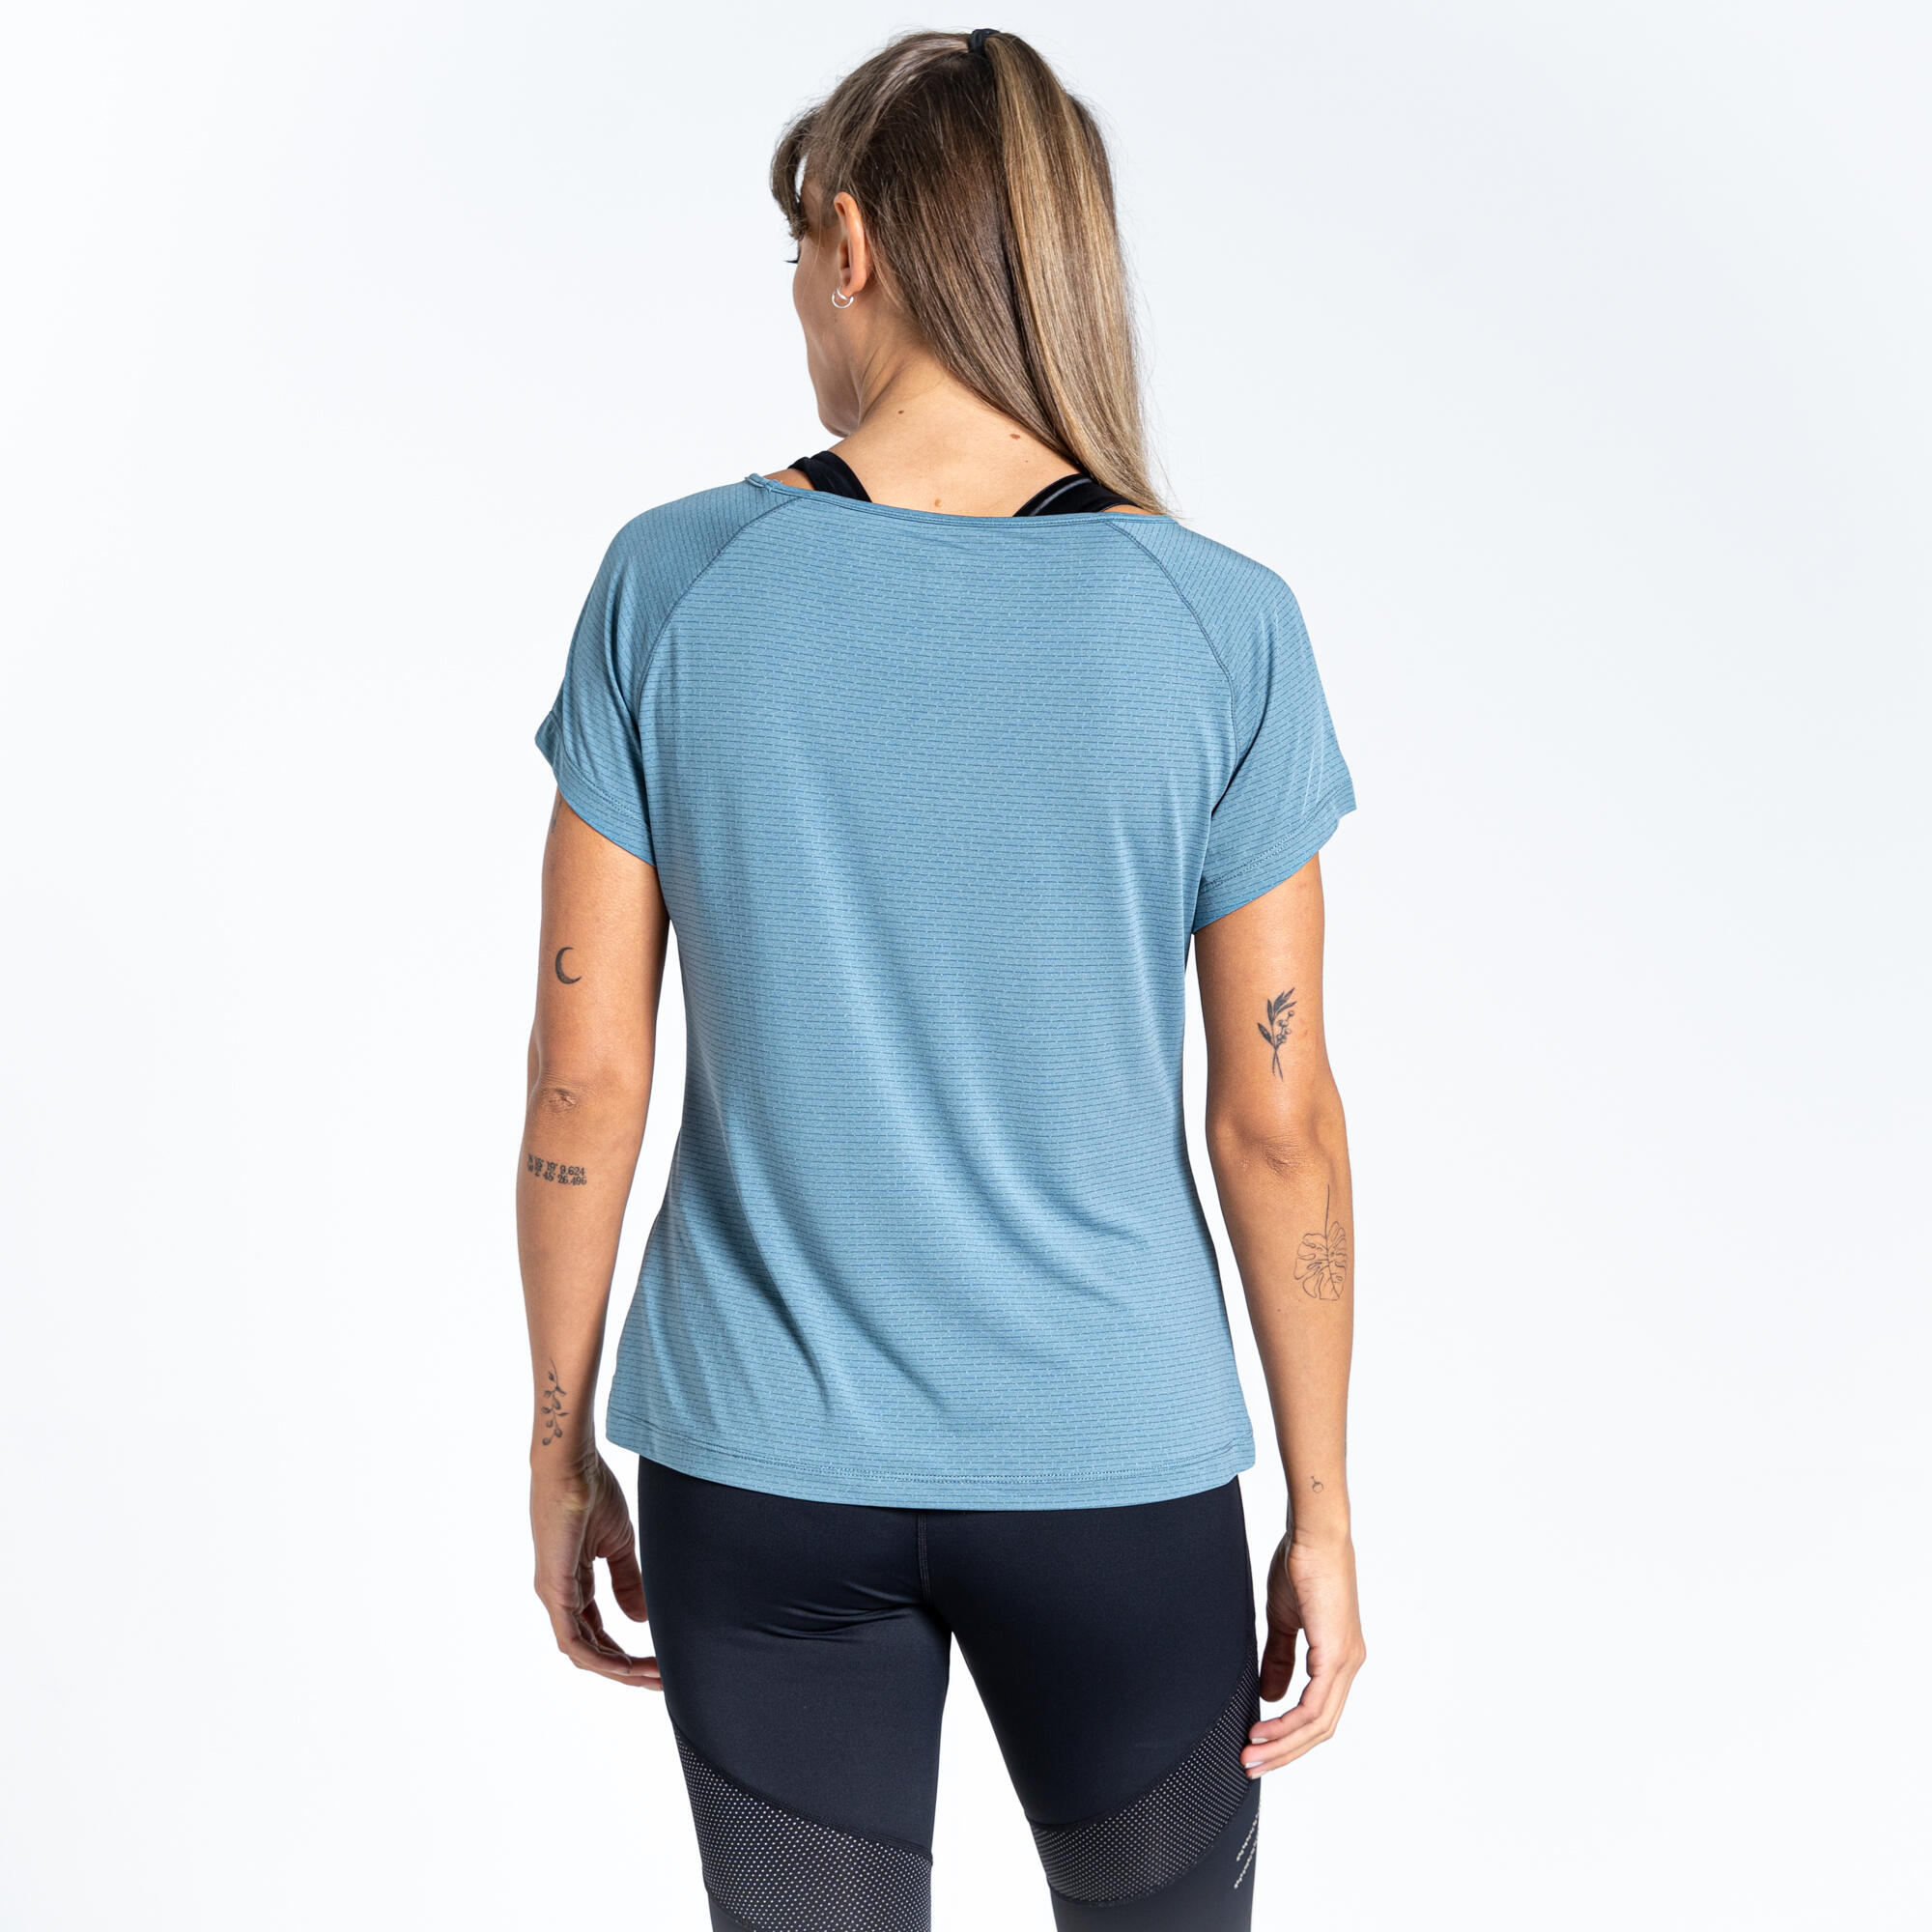 Cyrstallize Women's Fitness Short Sleeve T-Shirt - Blue Stone 3/5